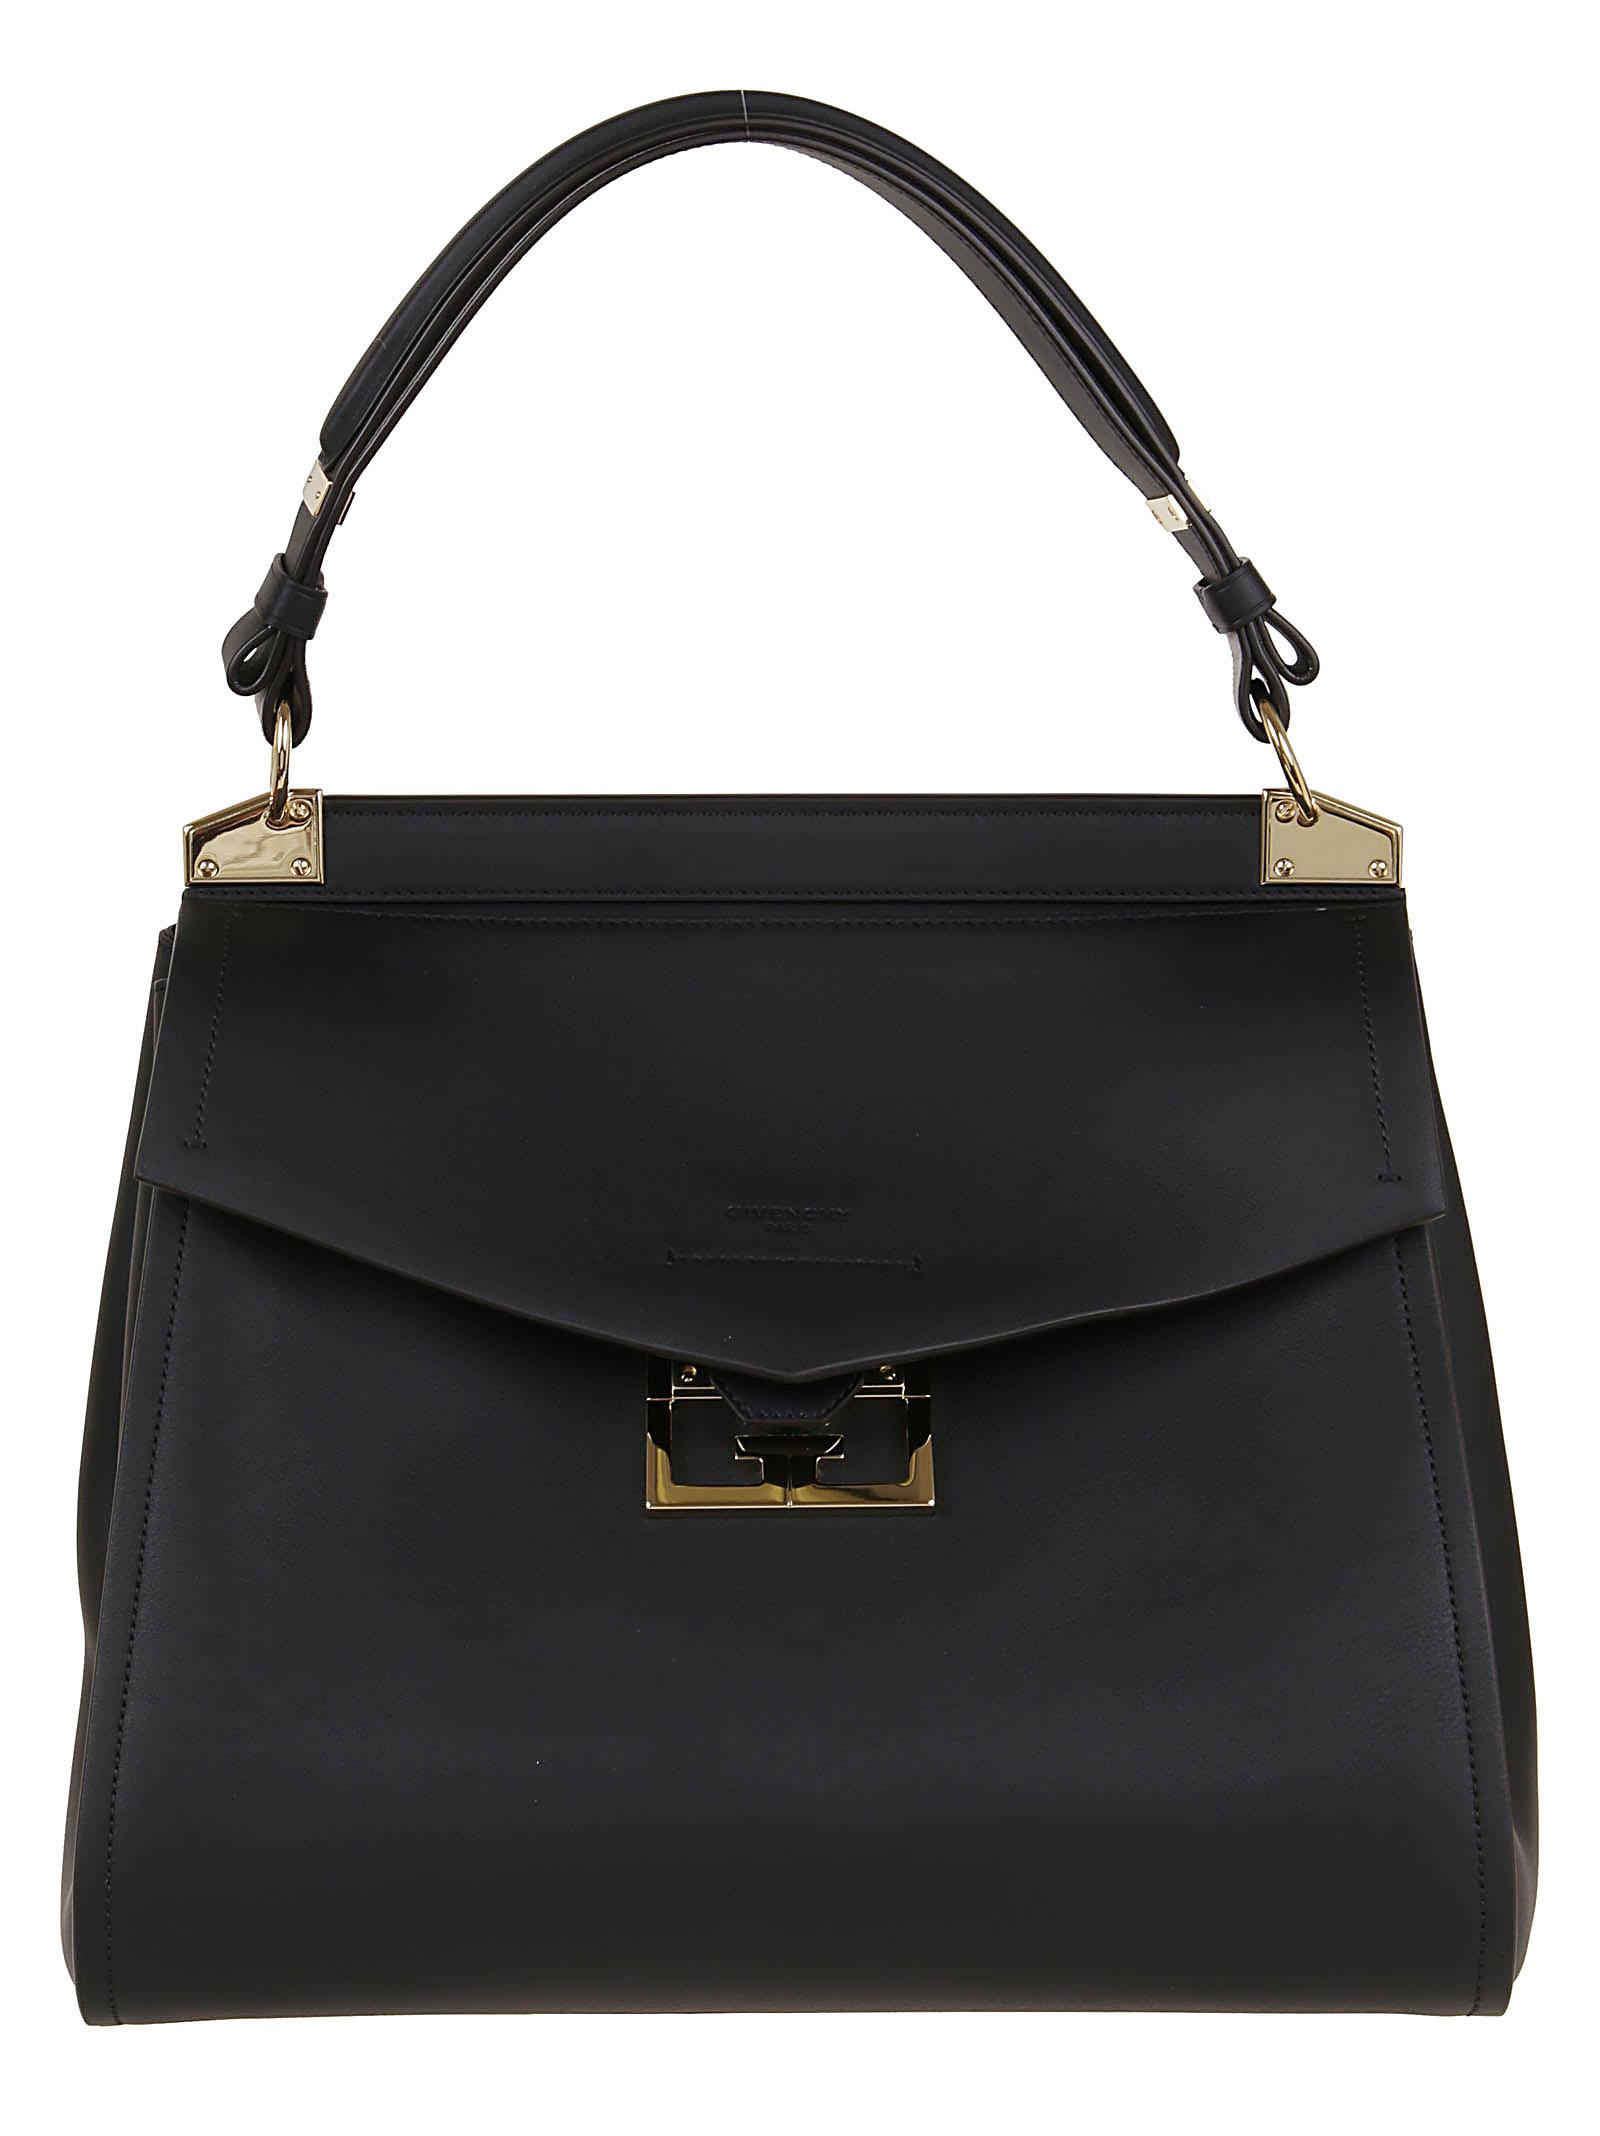 Givenchy Mystic Medium Bag in Black - Lyst